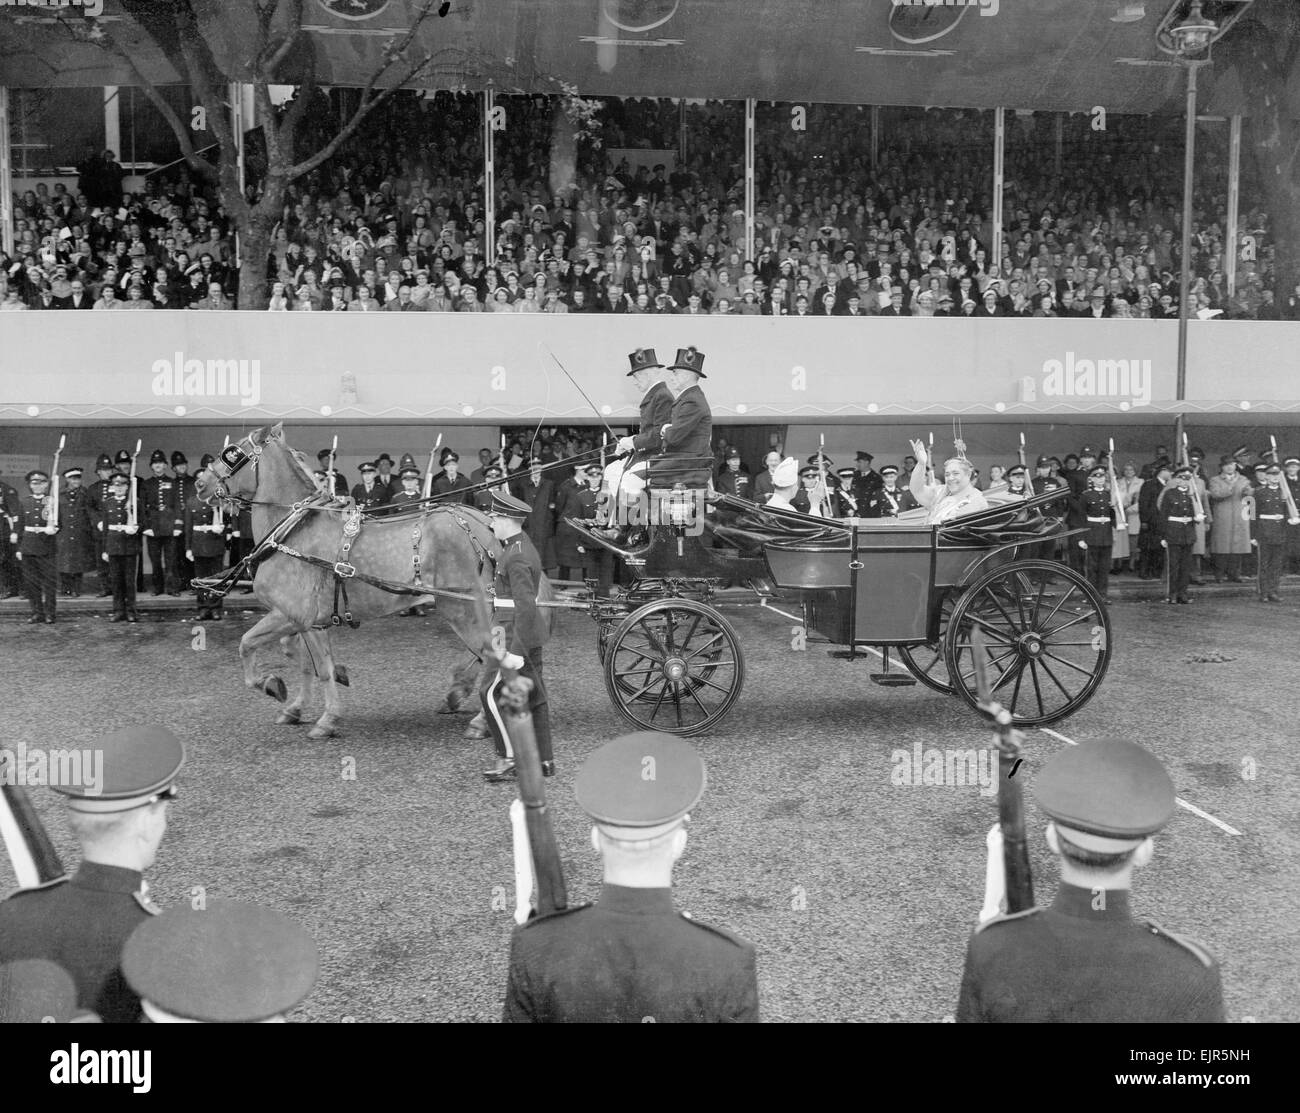 Le couronnement de la reine Elizabeth II. La Reine Salote de Tonga s'attachant à la foule acclamer par cheval dans le Parliament Square, Londres dans un chariot ouvert, au cours de la voyage en autocar Wesminster Abbey pour la cérémonie, souriant et saluant, dans la pluie battante. 2 juin 1953. Banque D'Images